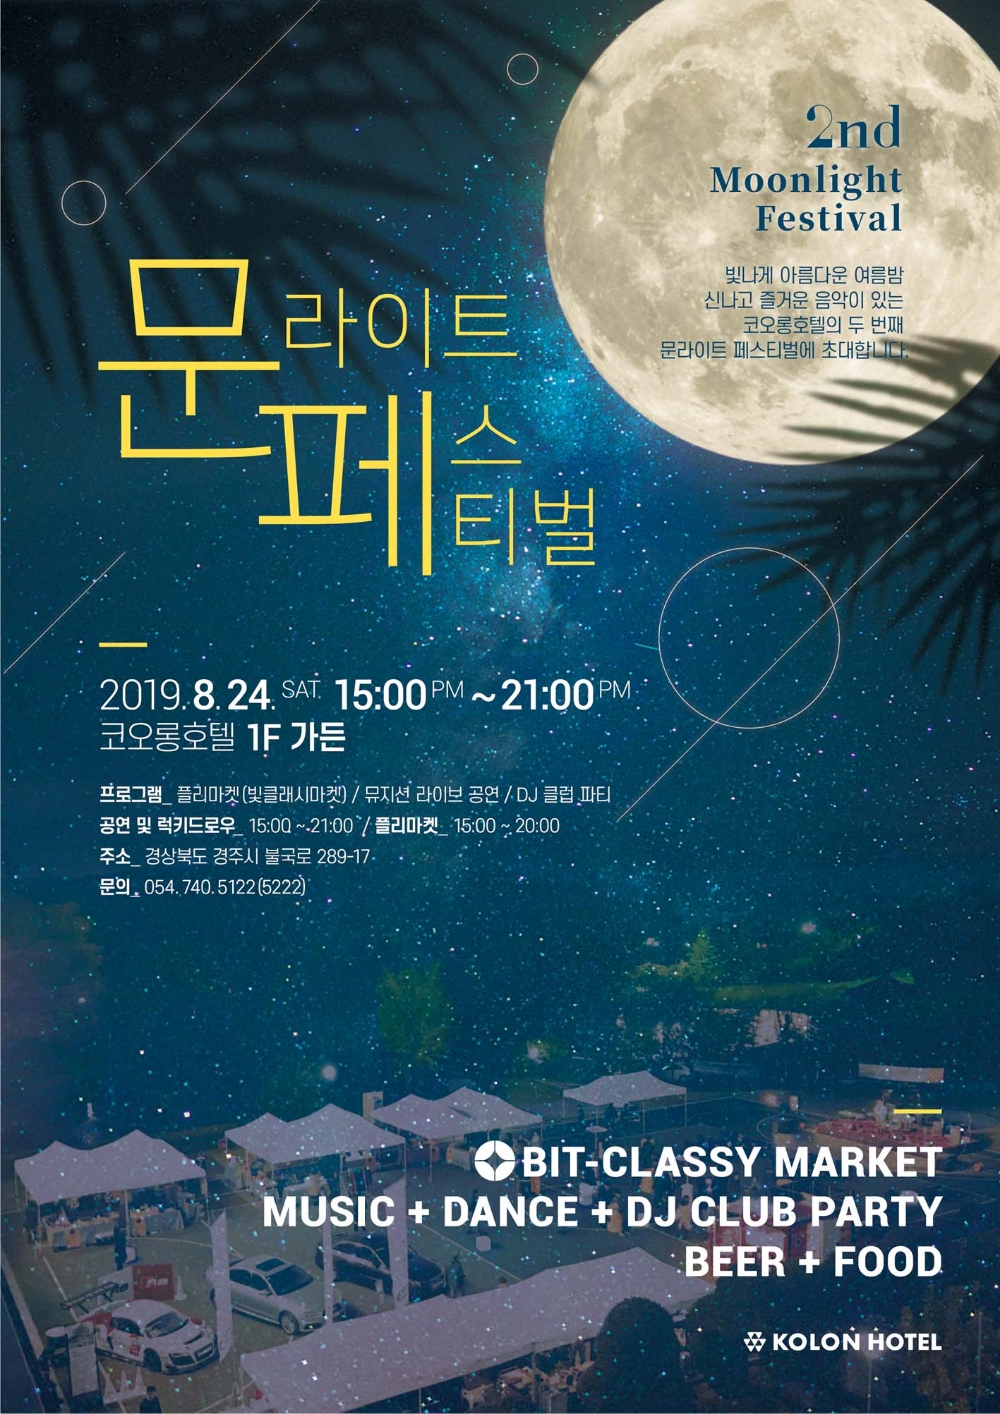 코오롱호텔, ‘제2회 문라이트 페스티벌’ 개최